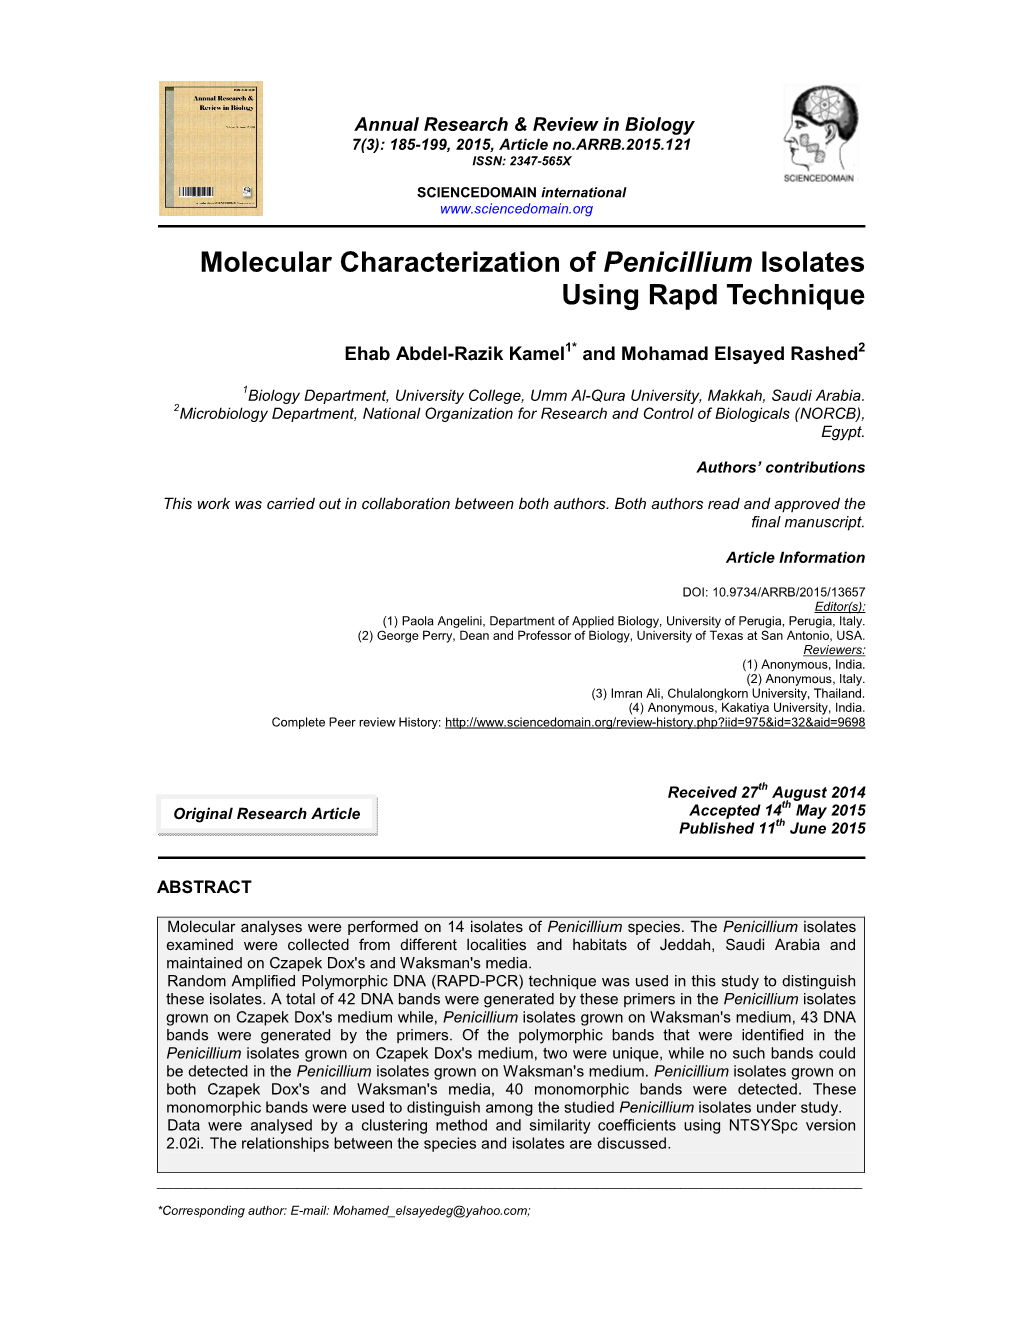 Molecular Characterization of Penicillium Isolates Using Rapd Technique